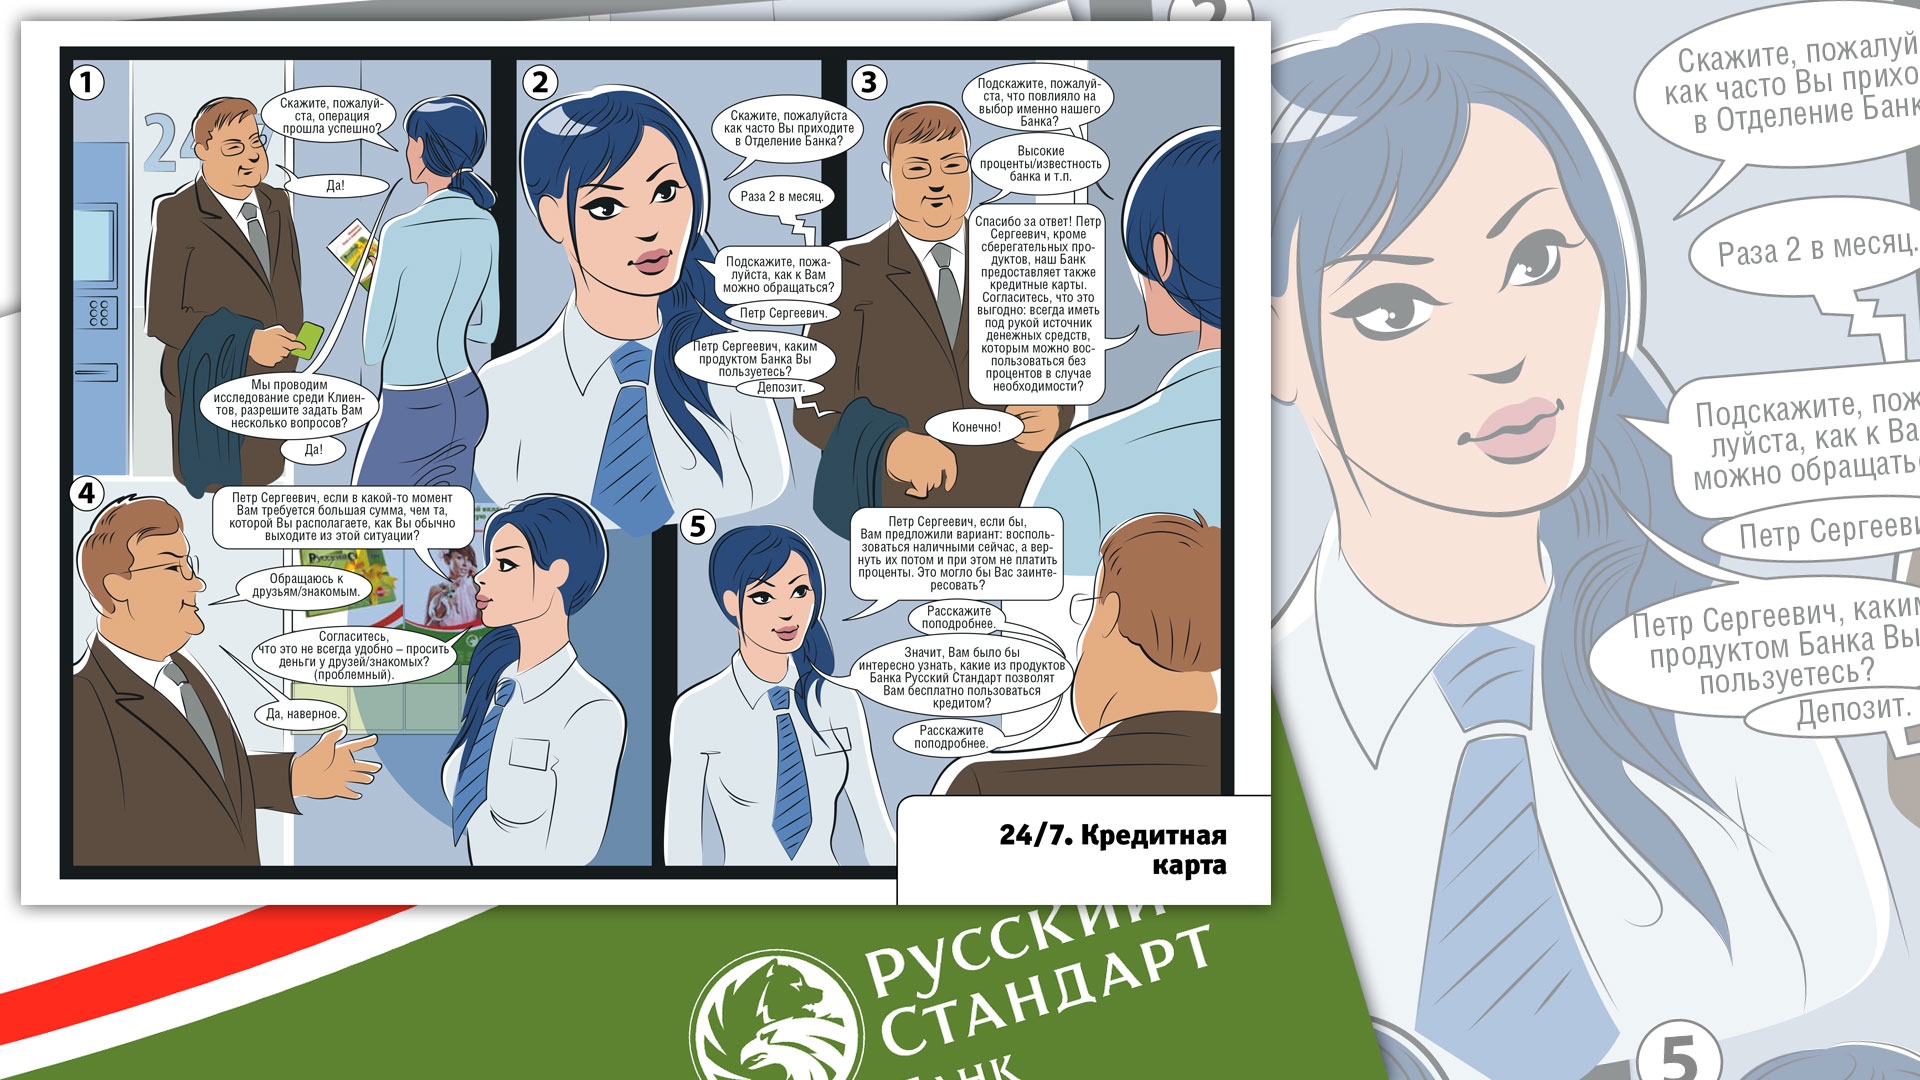 Банк «Русский стандарт» - Буклеты-инструкции для сотрудников